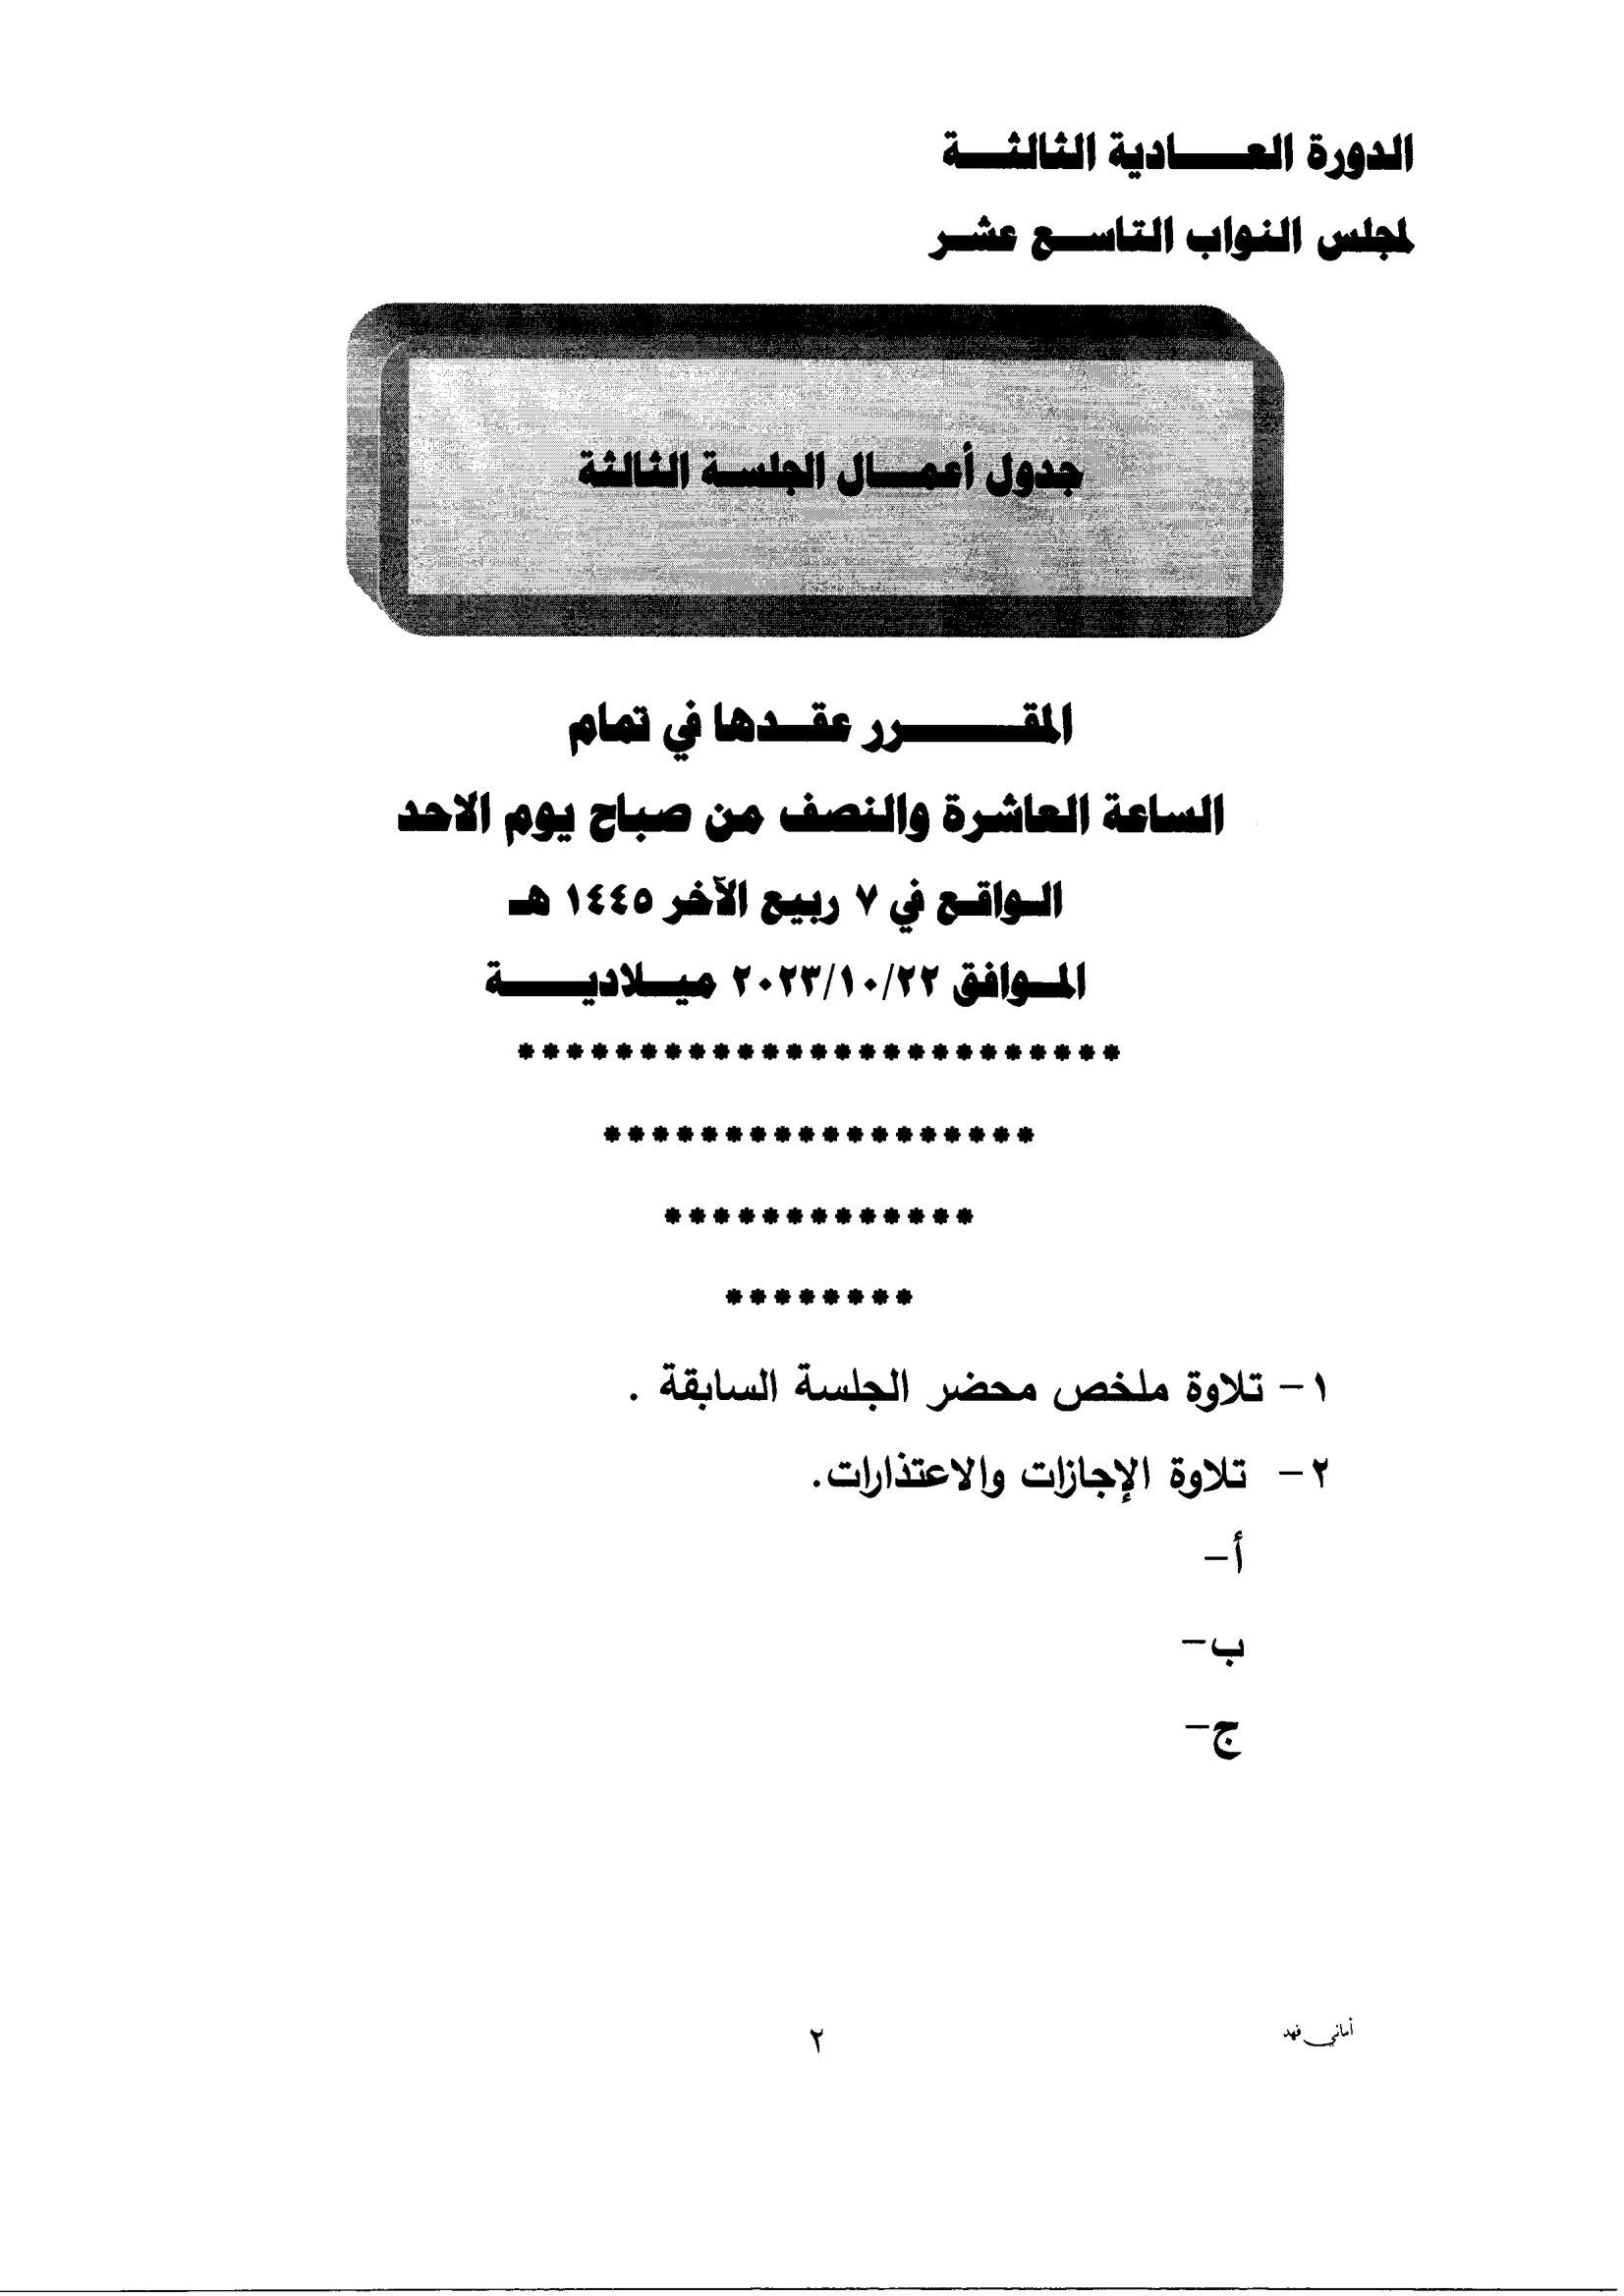 Madar Al-Saa Images 0.5143395503995325